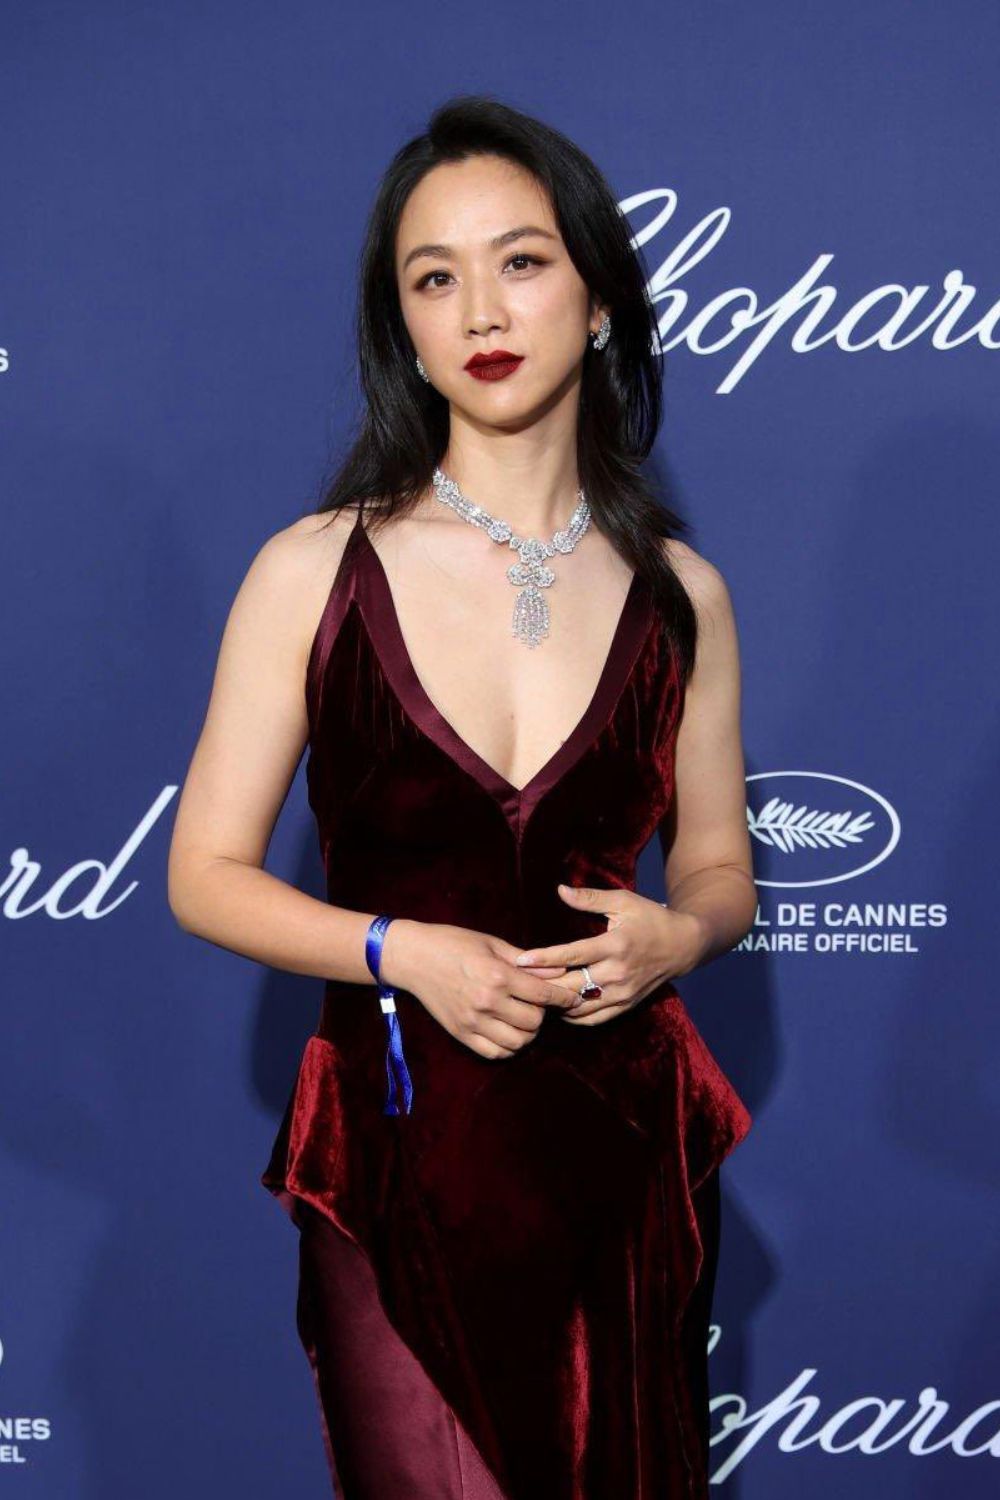 Diện mạo rạng rỡ của nữ diễn viên Thang Duy trên thảm đỏ Cannes.